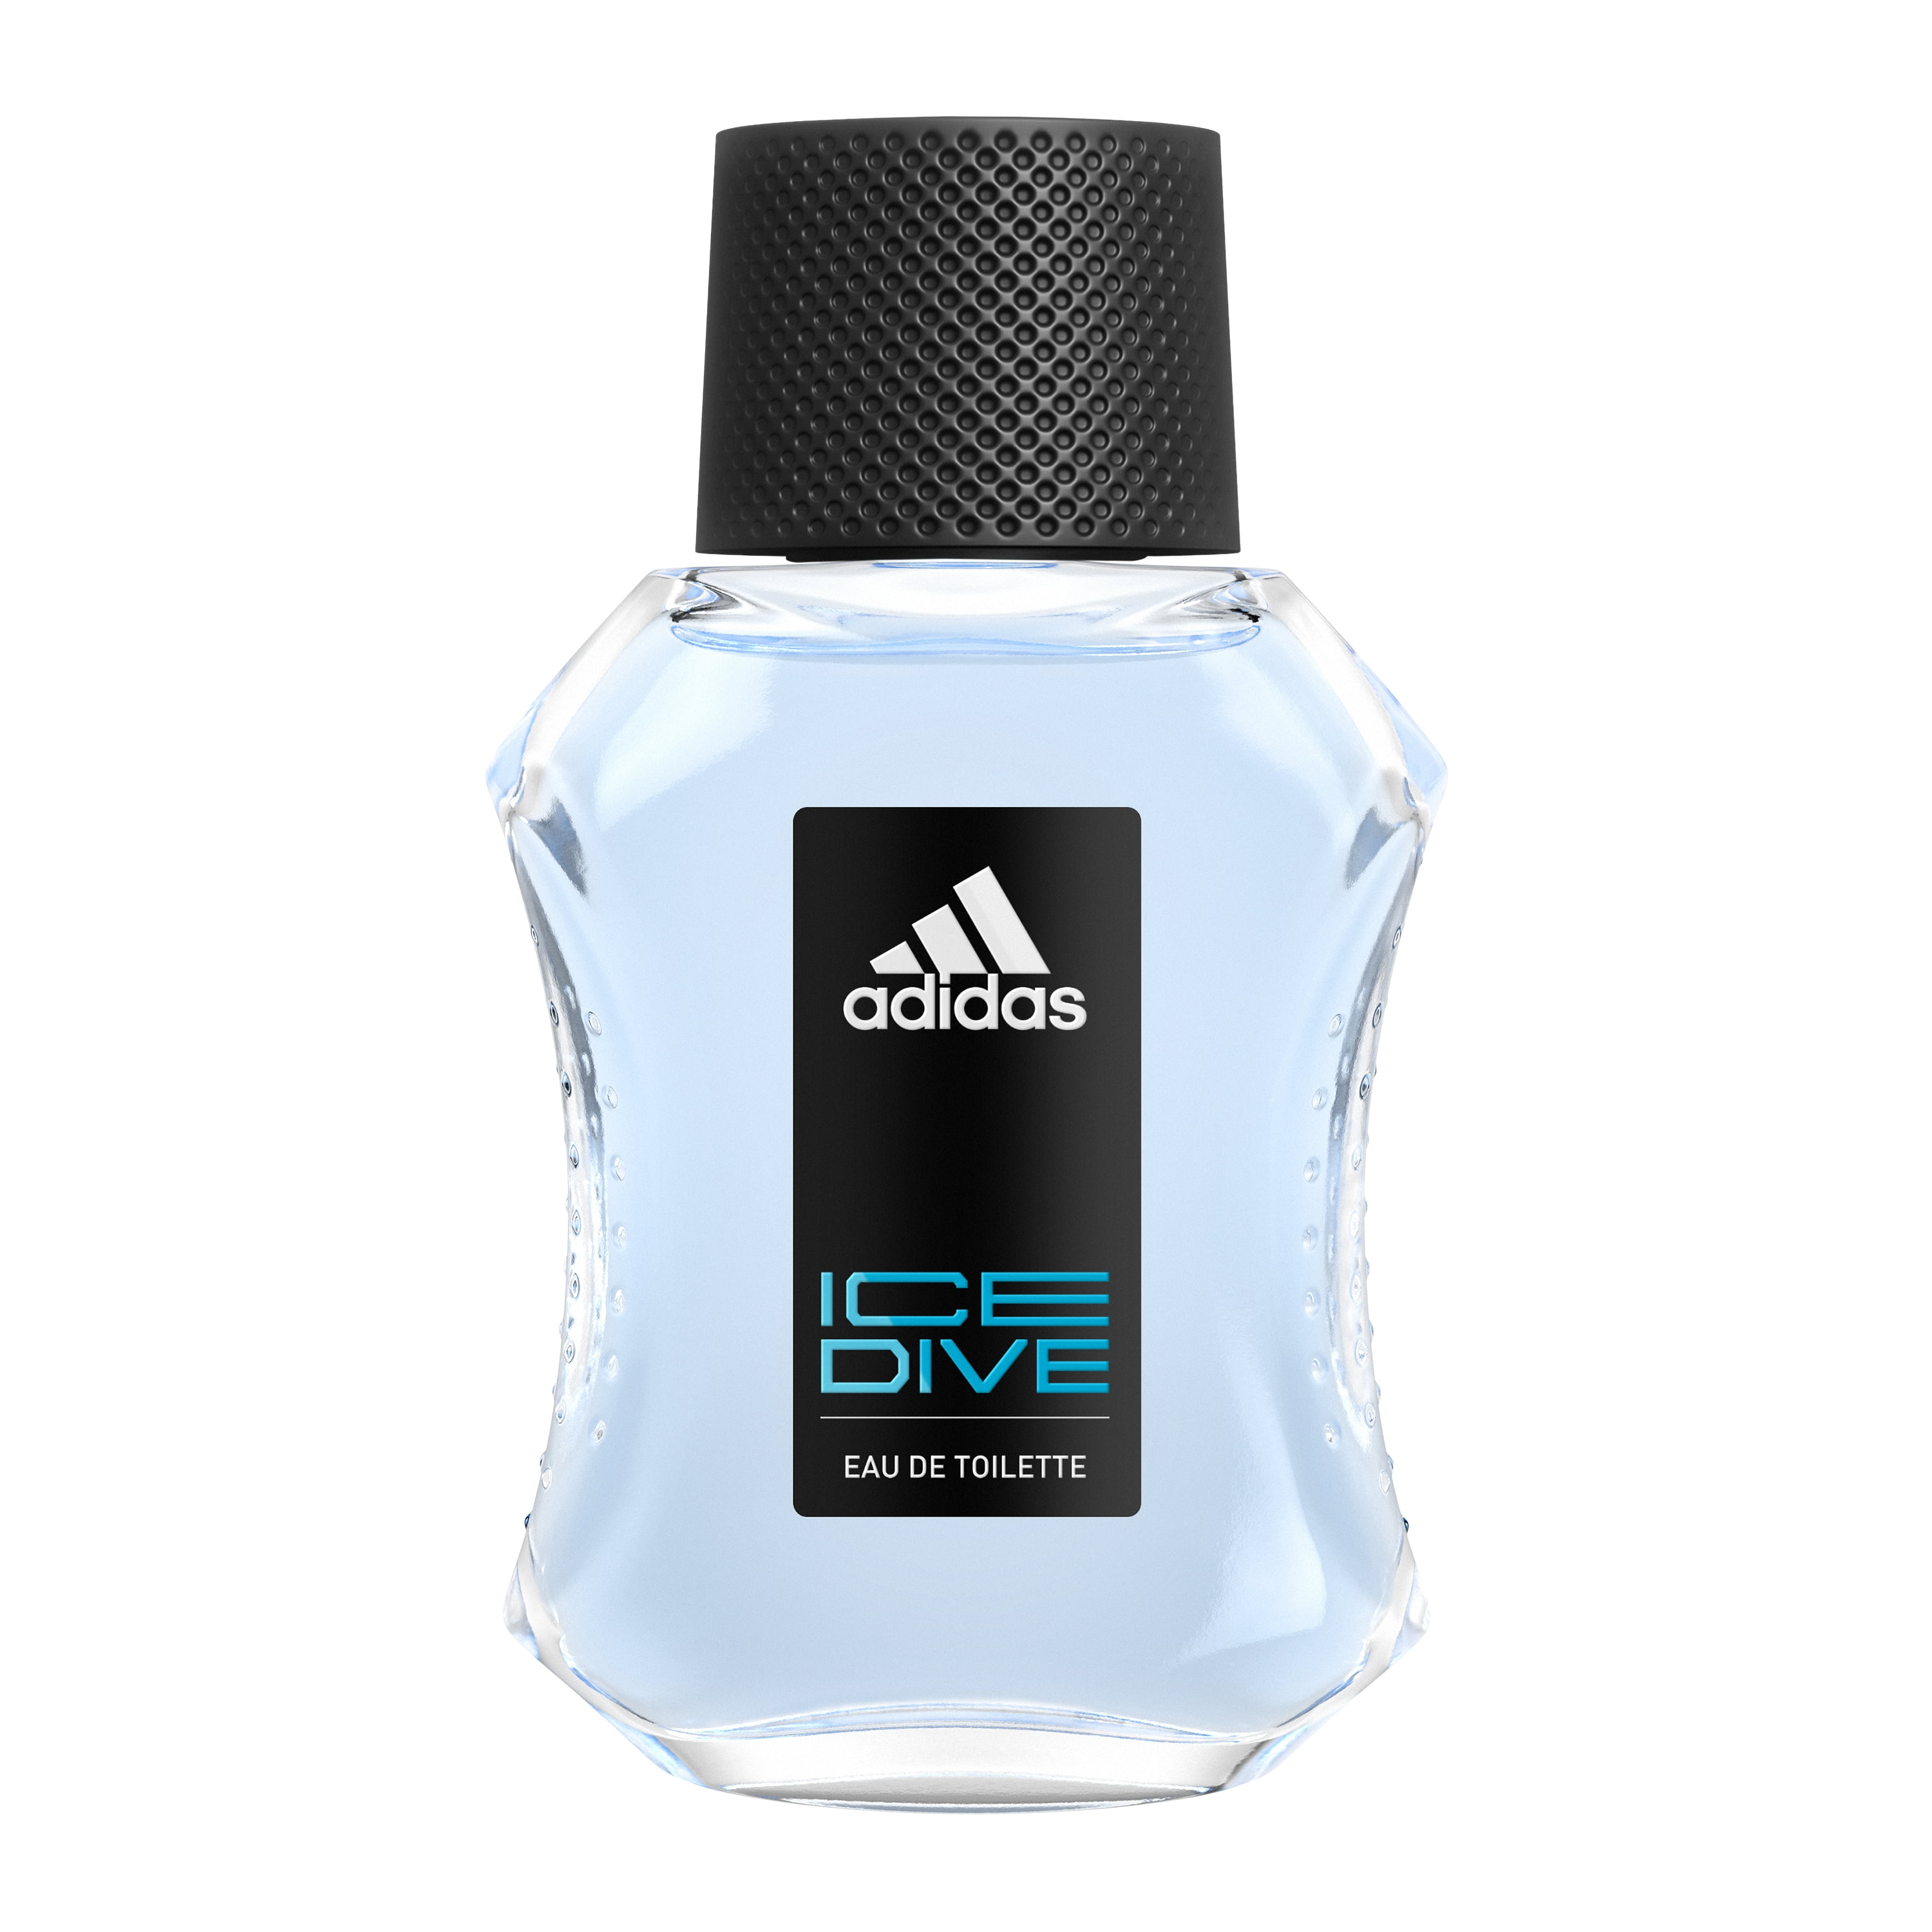 Adidas Ice Dive, Eau de Toilette, 1.7 fl oz, Men's Cologne